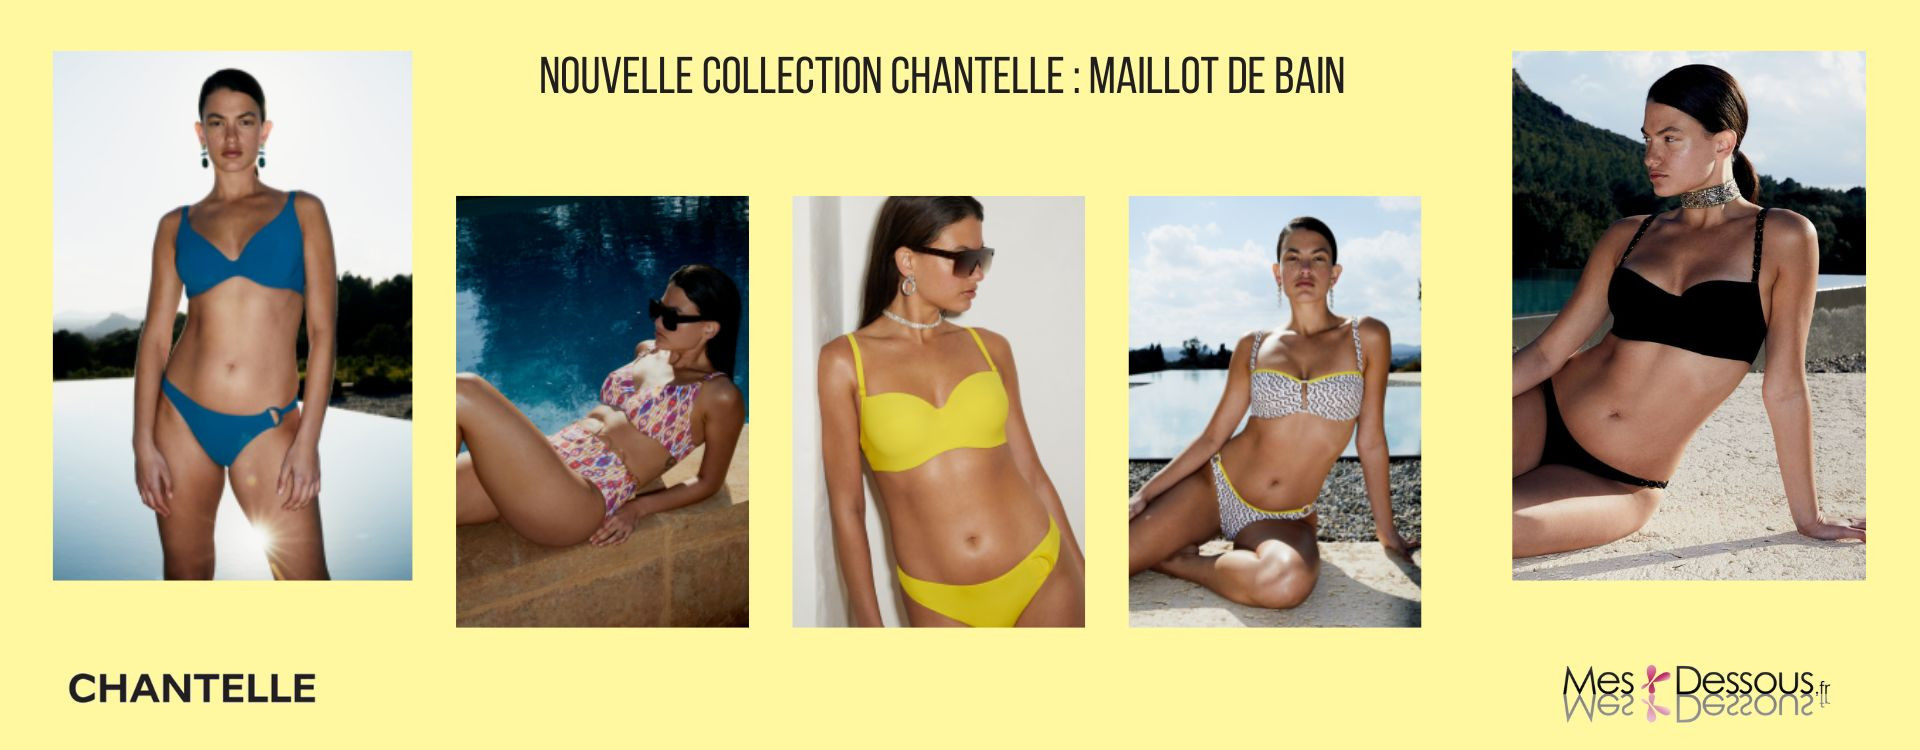 Élégance Sublime : La Collection de Maillots de Bain Chantelle pour un Été Inoubliable